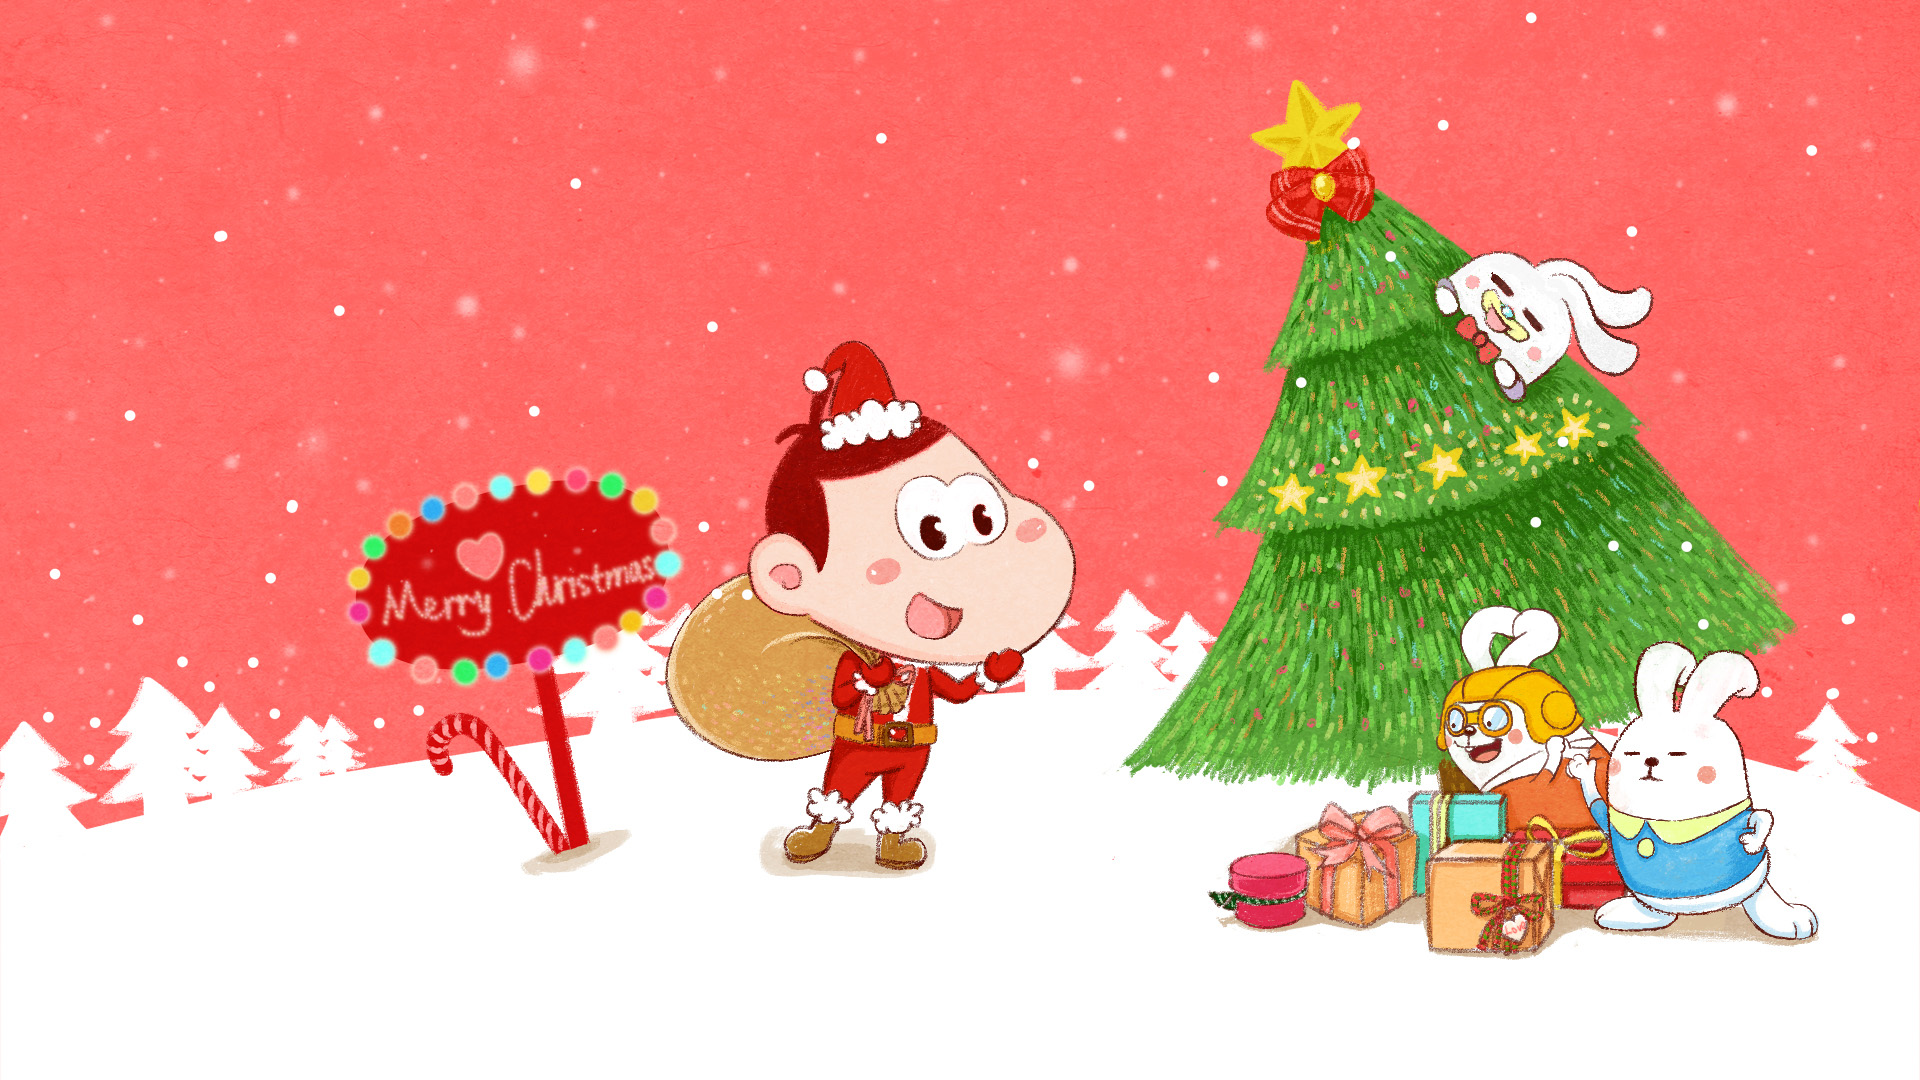 圣诞节Merry Christmas,圣诞树,圣诞老人,礼物,下雪,兔子,萌,可爱,阿U壁纸